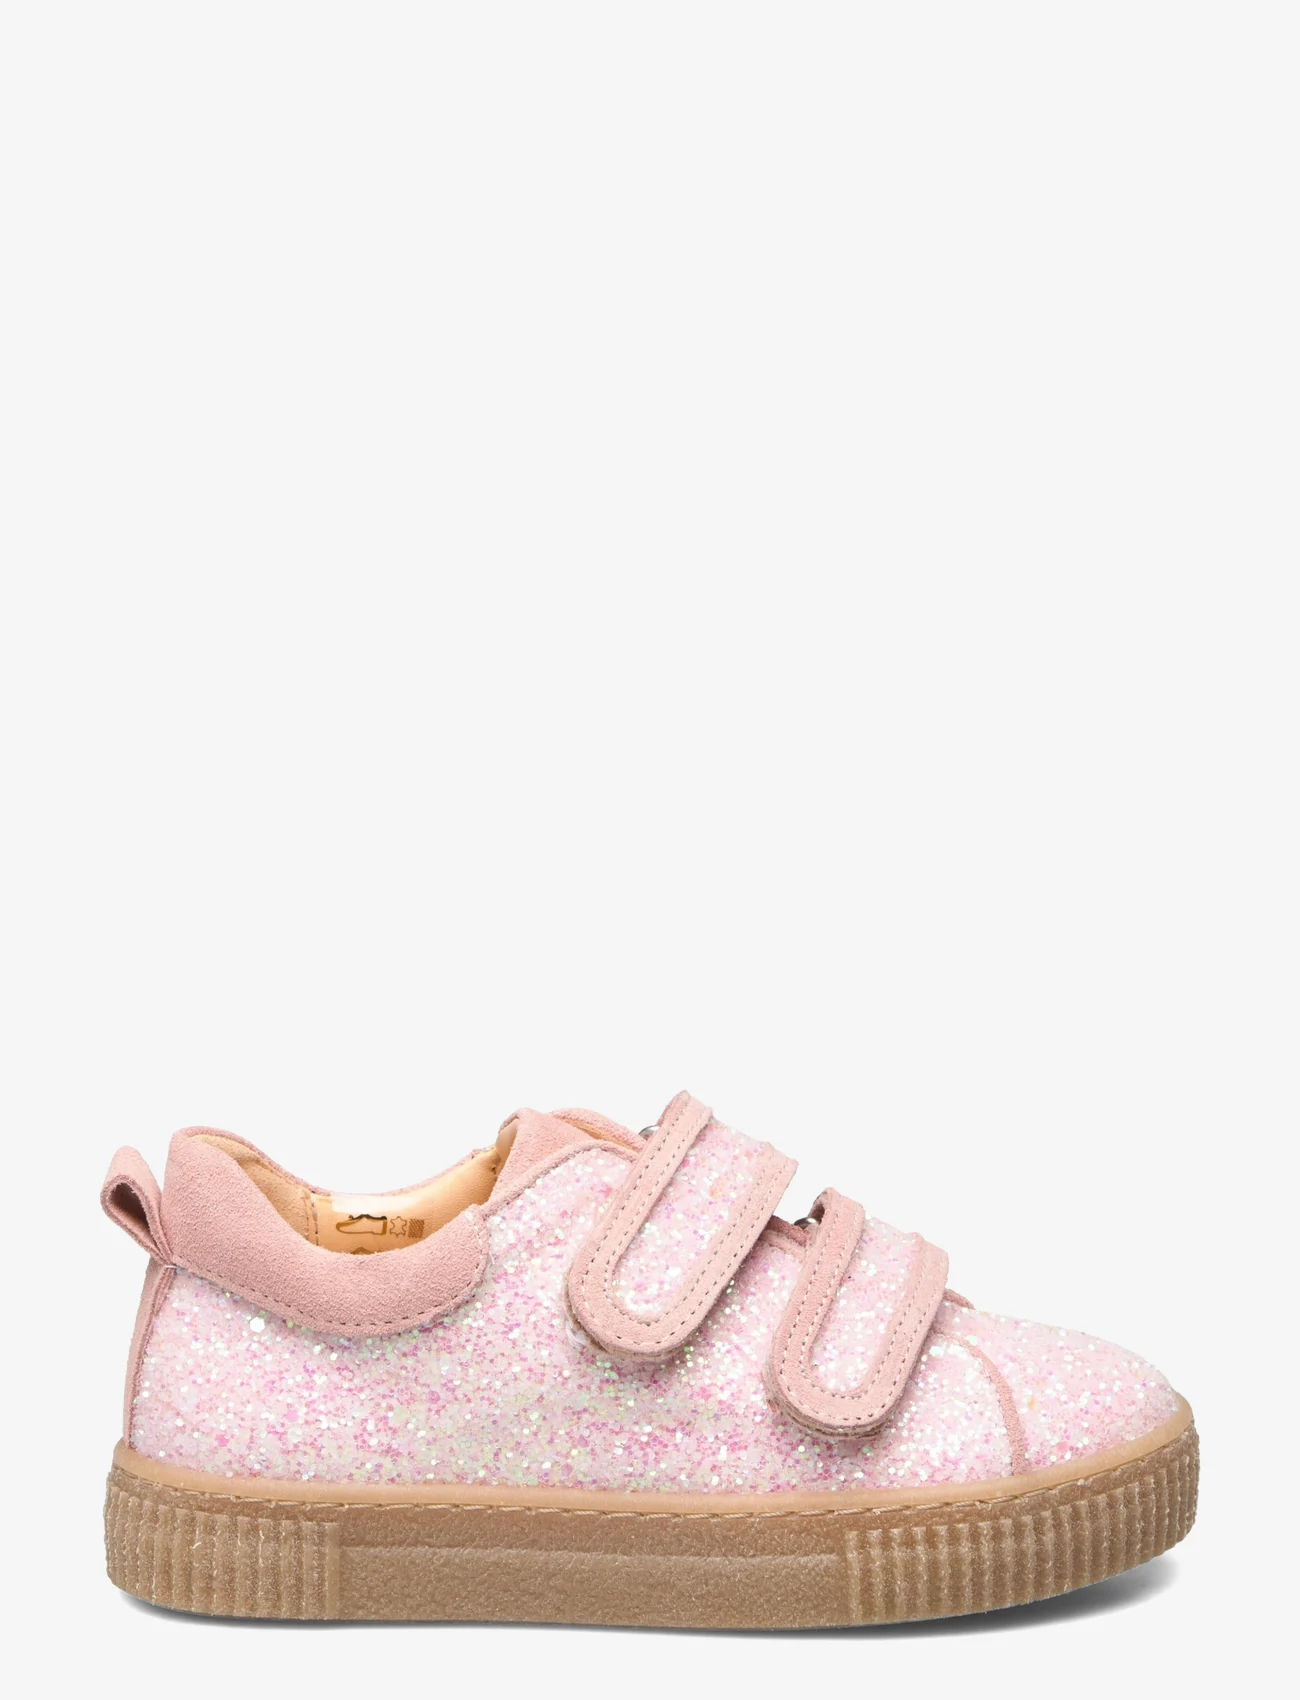 ANGULUS - Shoes - flat - with velcro - suvised sooduspakkumised - 2698 rosa glitter/peach - 1